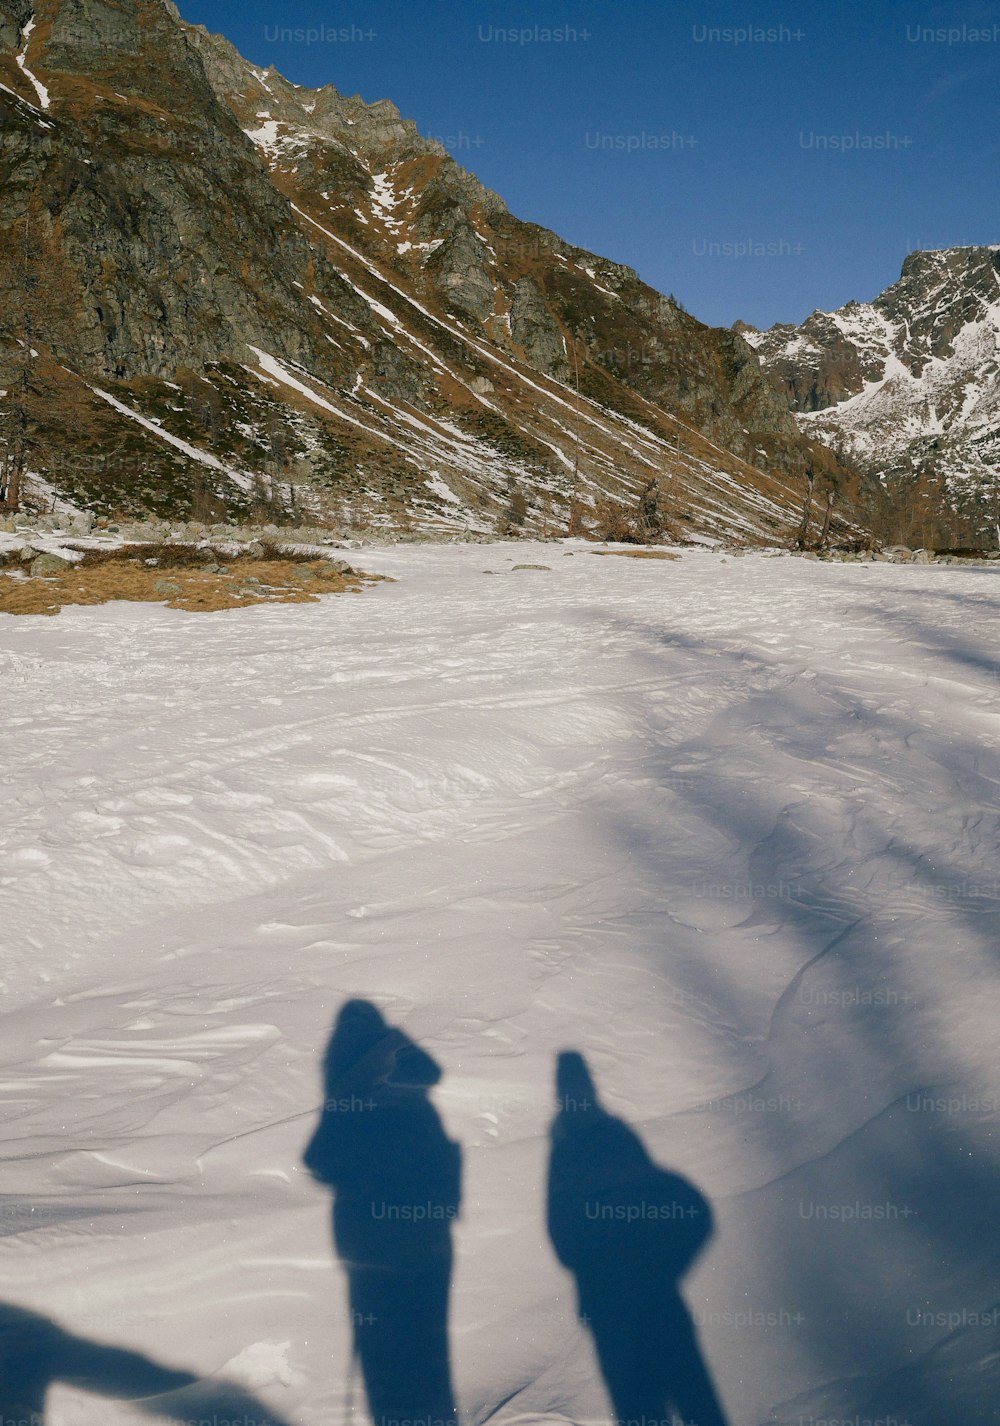 Un par de personas de pie en la cima de una pendiente cubierta de nieve